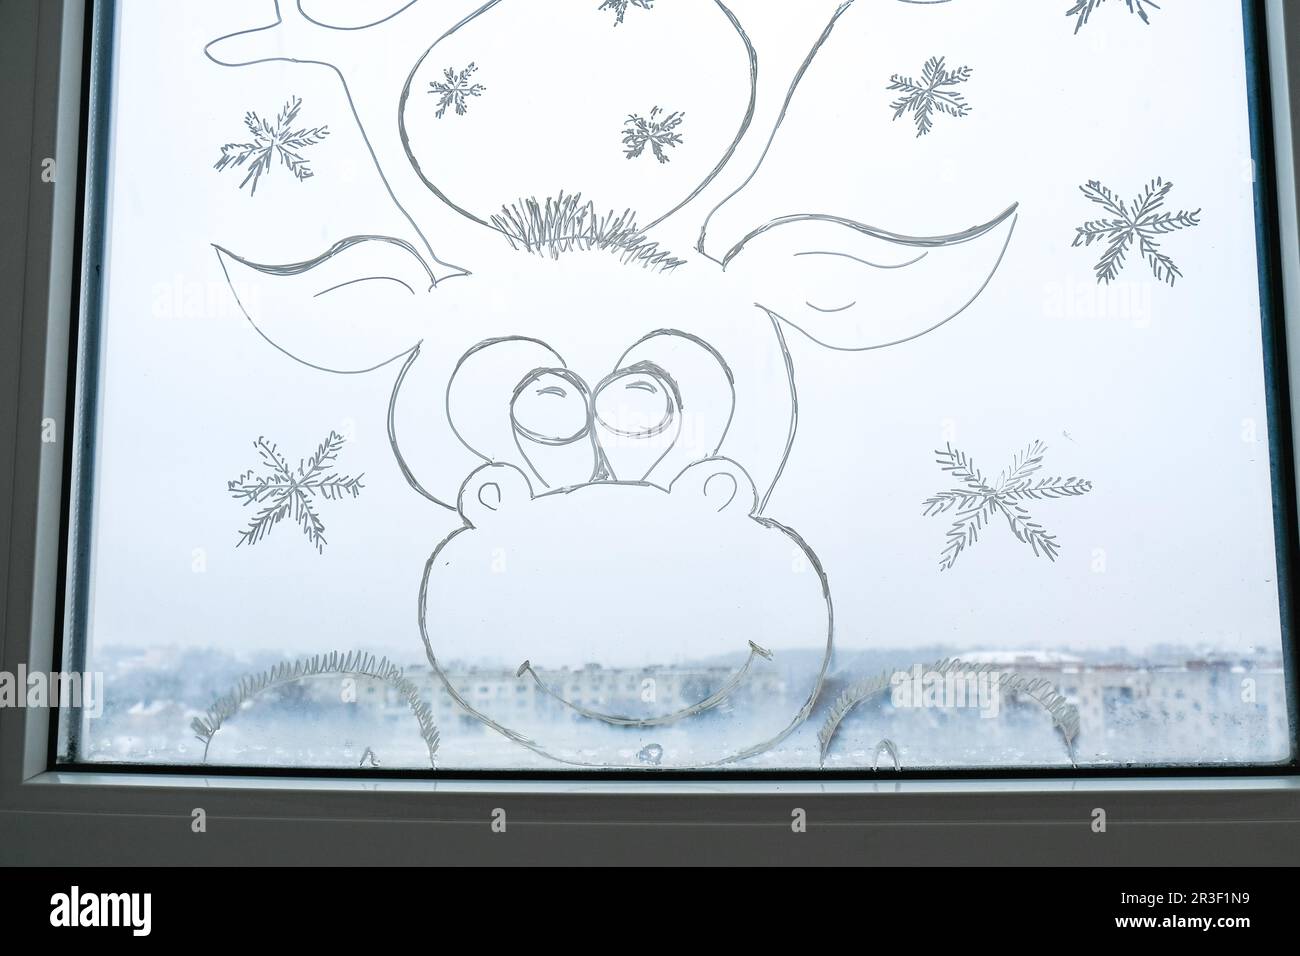 Cervi di Natale dipinto su vetro della finestra. Decorazioni invernali natalizie sul vetro della finestra. Disegno bianco di cervo. Neve arte tracery vento Foto Stock